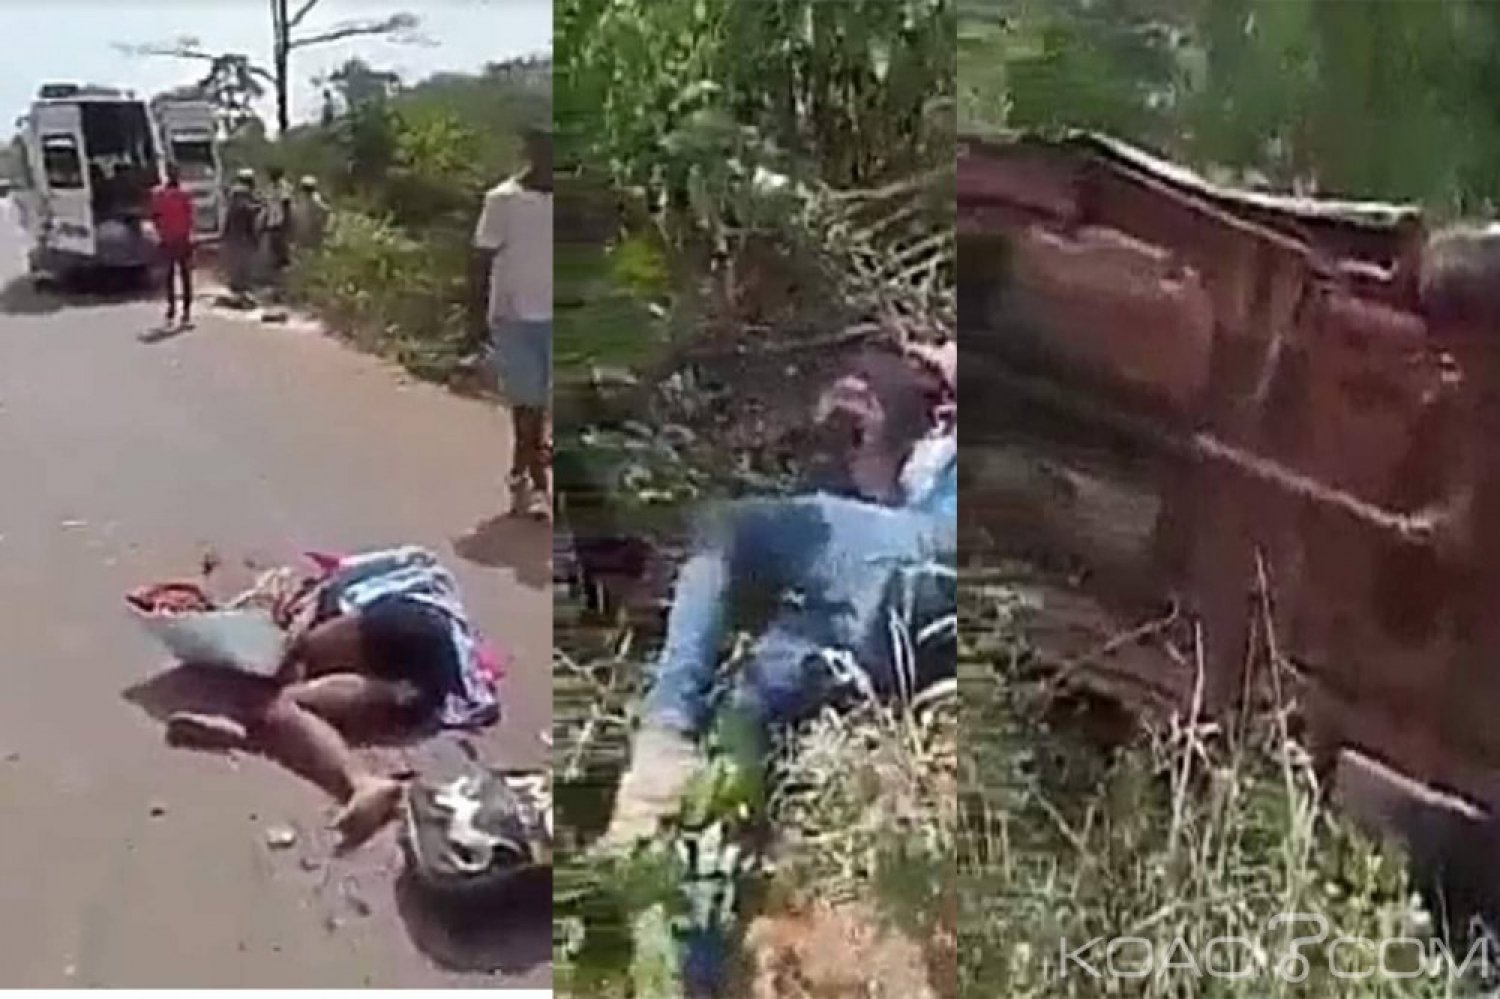 Côte d'Ivoire: À Biankouman, un camion d'une société minière tue 4 personnes et fait plusieurs blessés graves